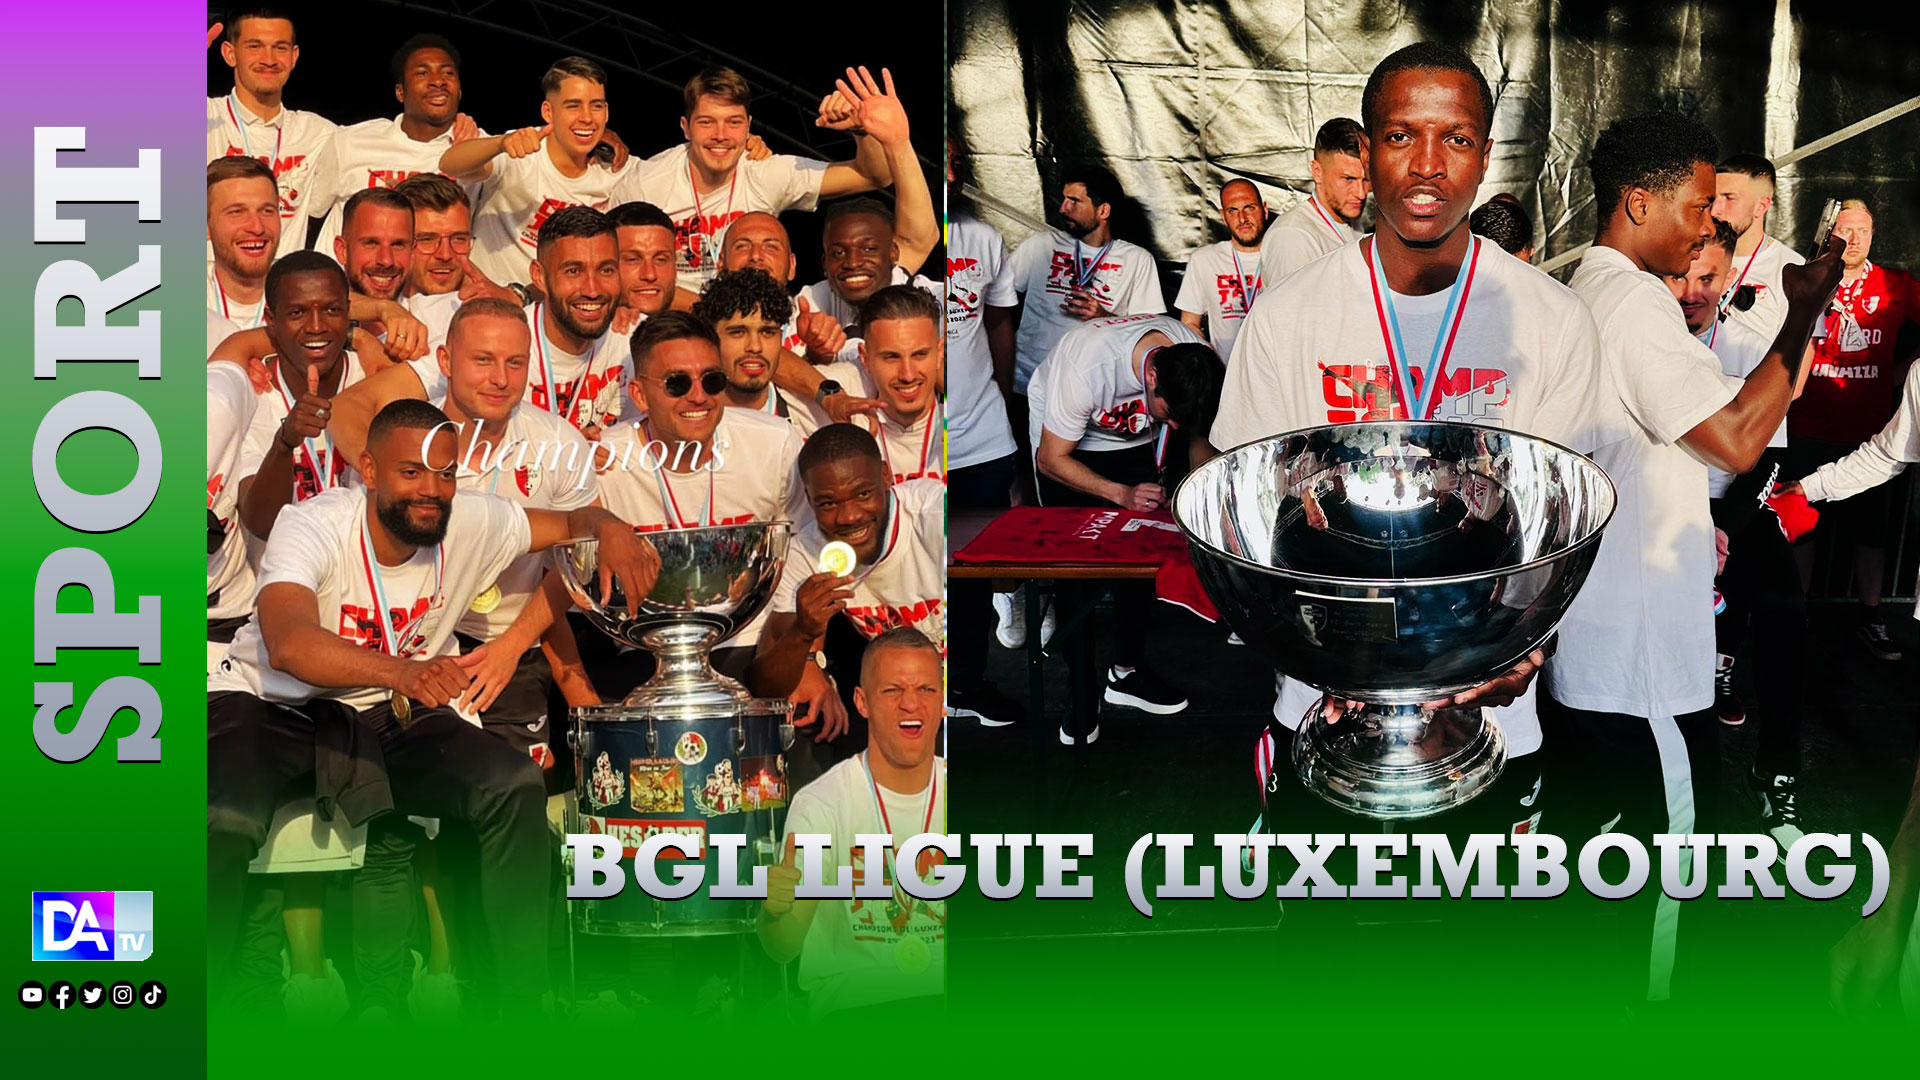 BGL Ligue (Luxembourg) : Premier sacre pour l’attaquant sénégalais Moussa Seydi qui remporte le championnat